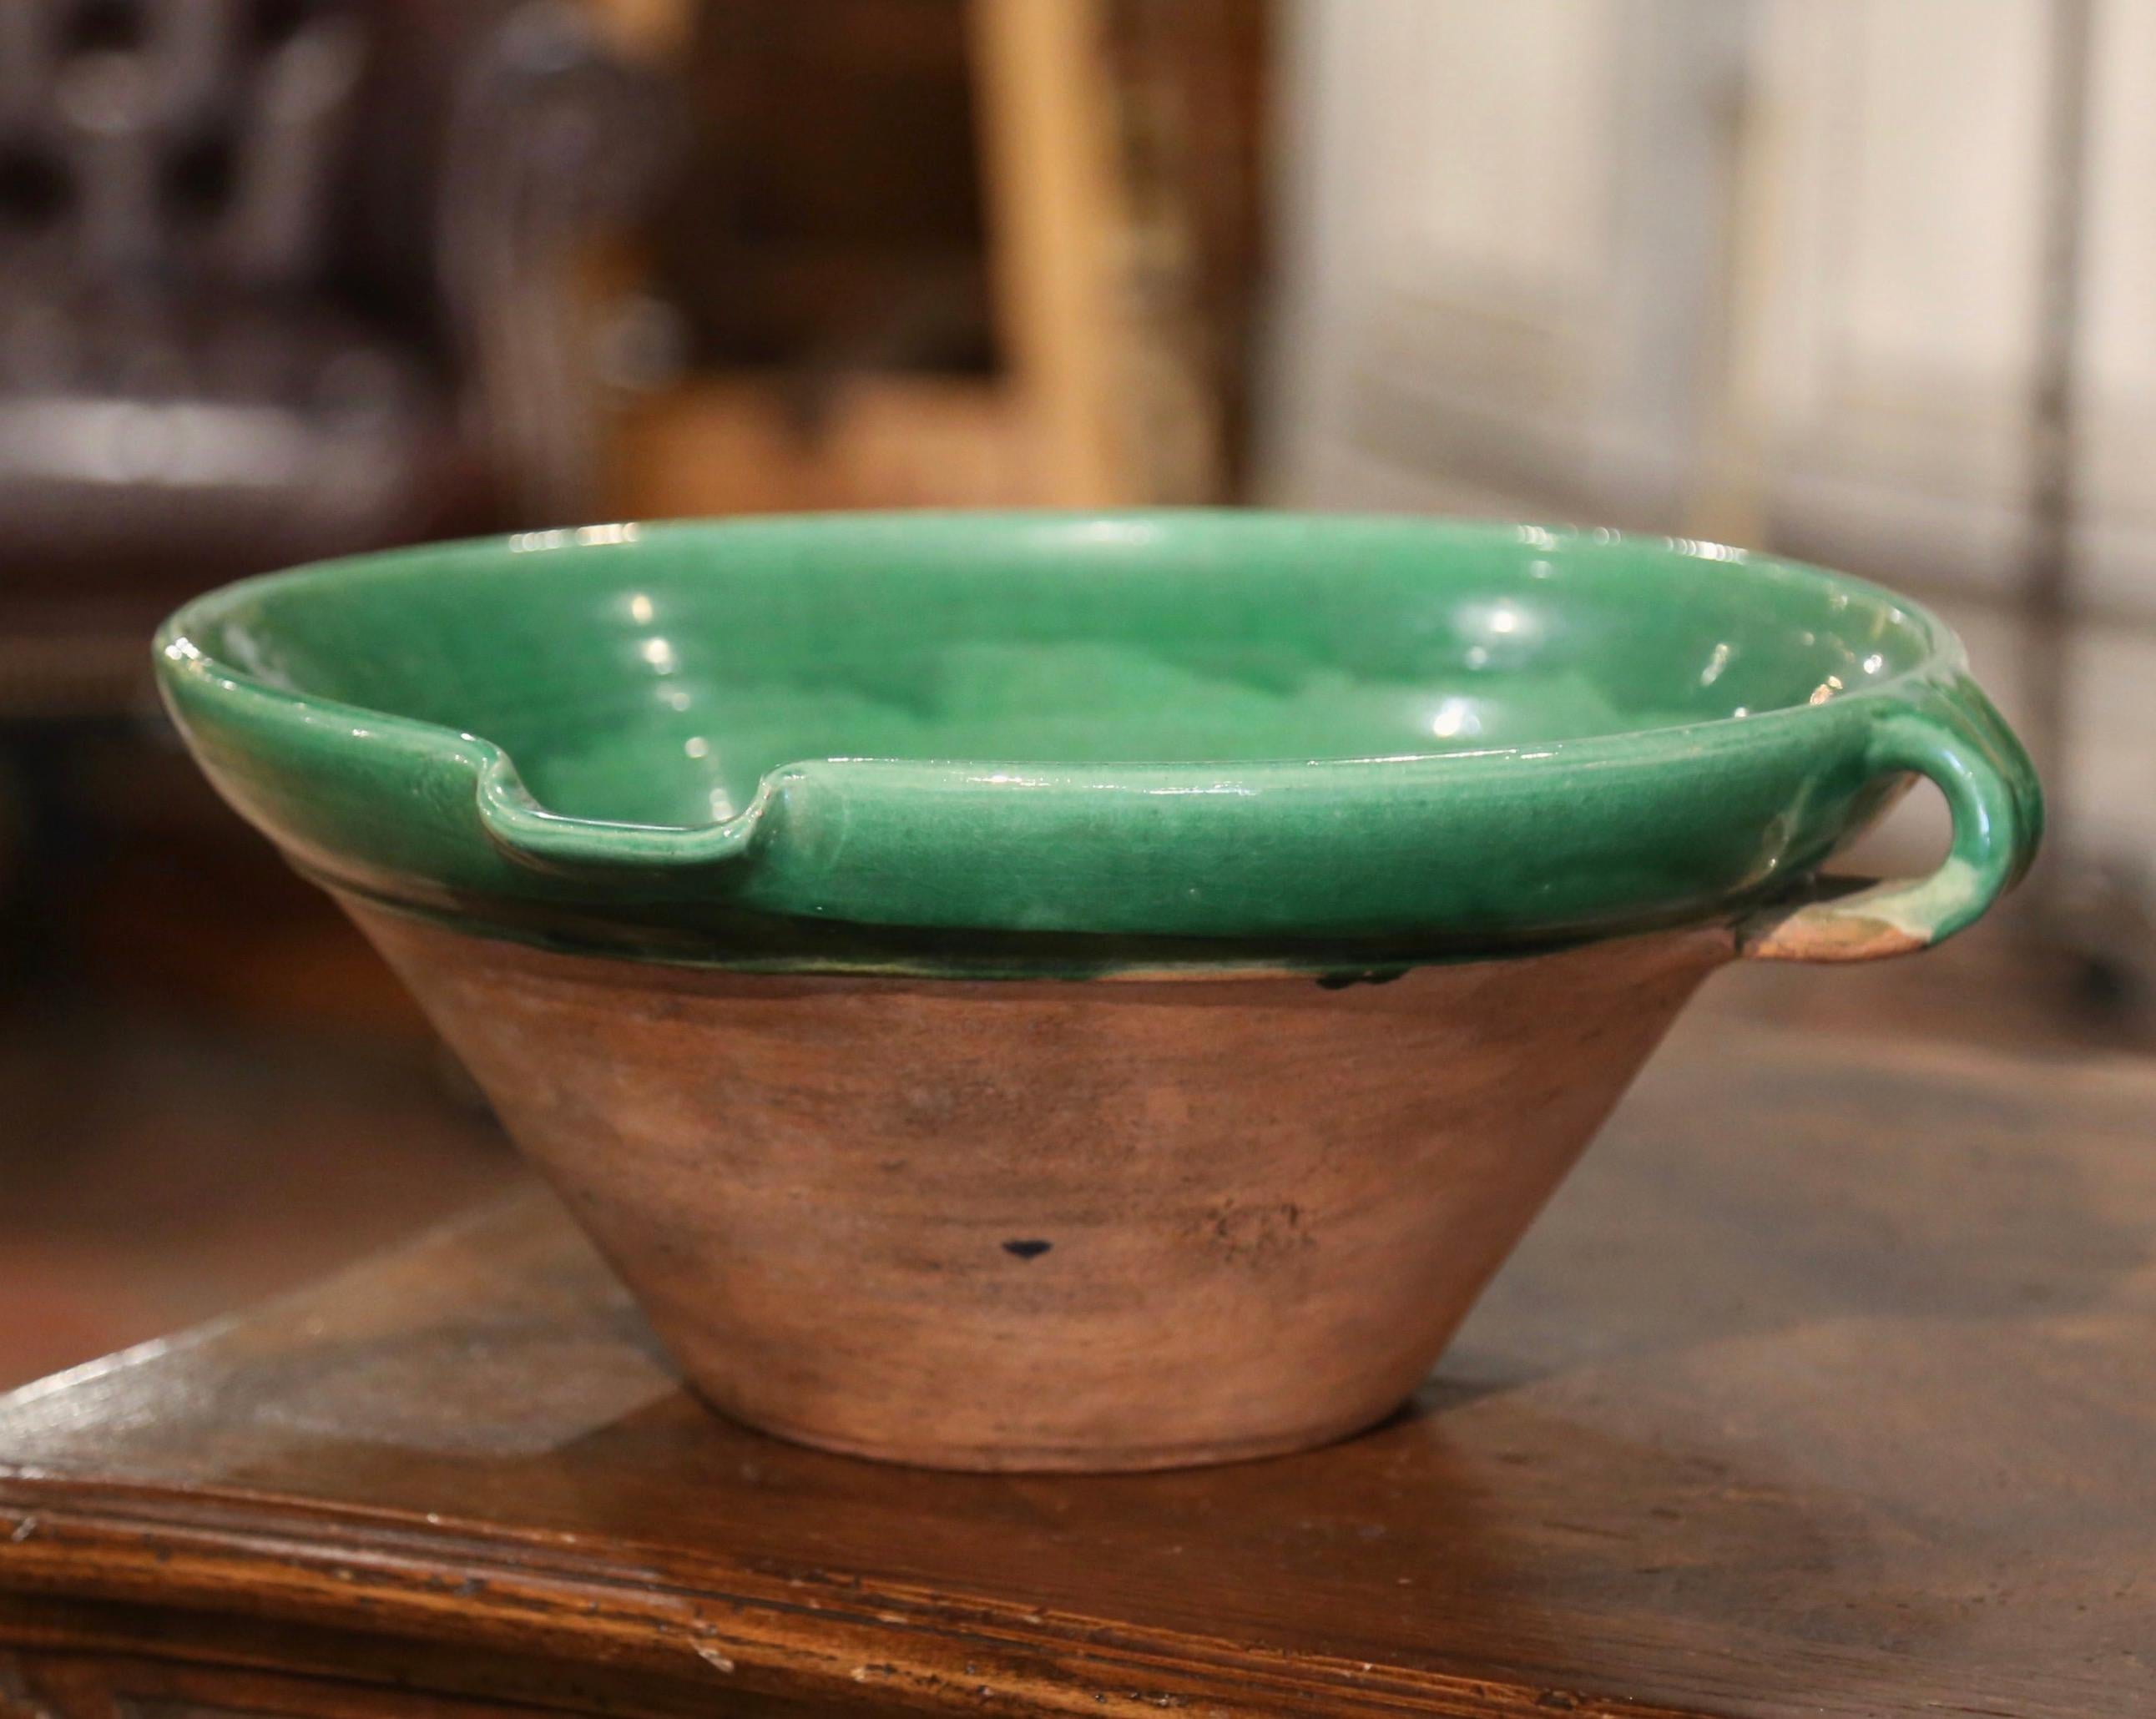 Diese elegante antike Tian (provenzalische Bezeichnung für Schale) wurde um 1970 in der Provence, Frankreich, hergestellt; die runde, handgefertigte Terrakottaschale hat zwei kleine Henkel, einen Dienerschnabel und eine dezente grüne Glasur auf der